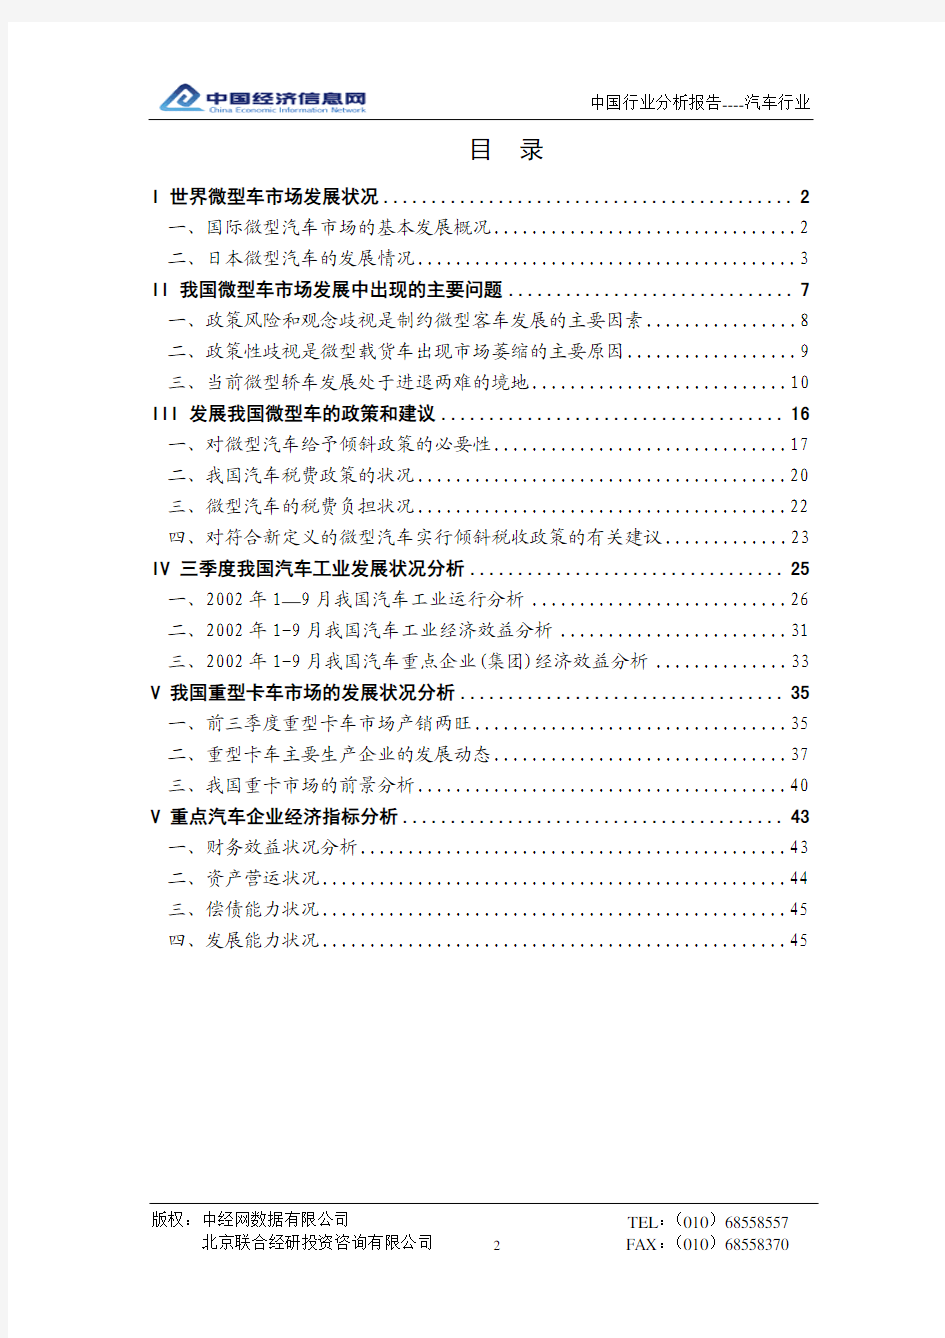 中国汽车行业分析报告(2002年3季度)